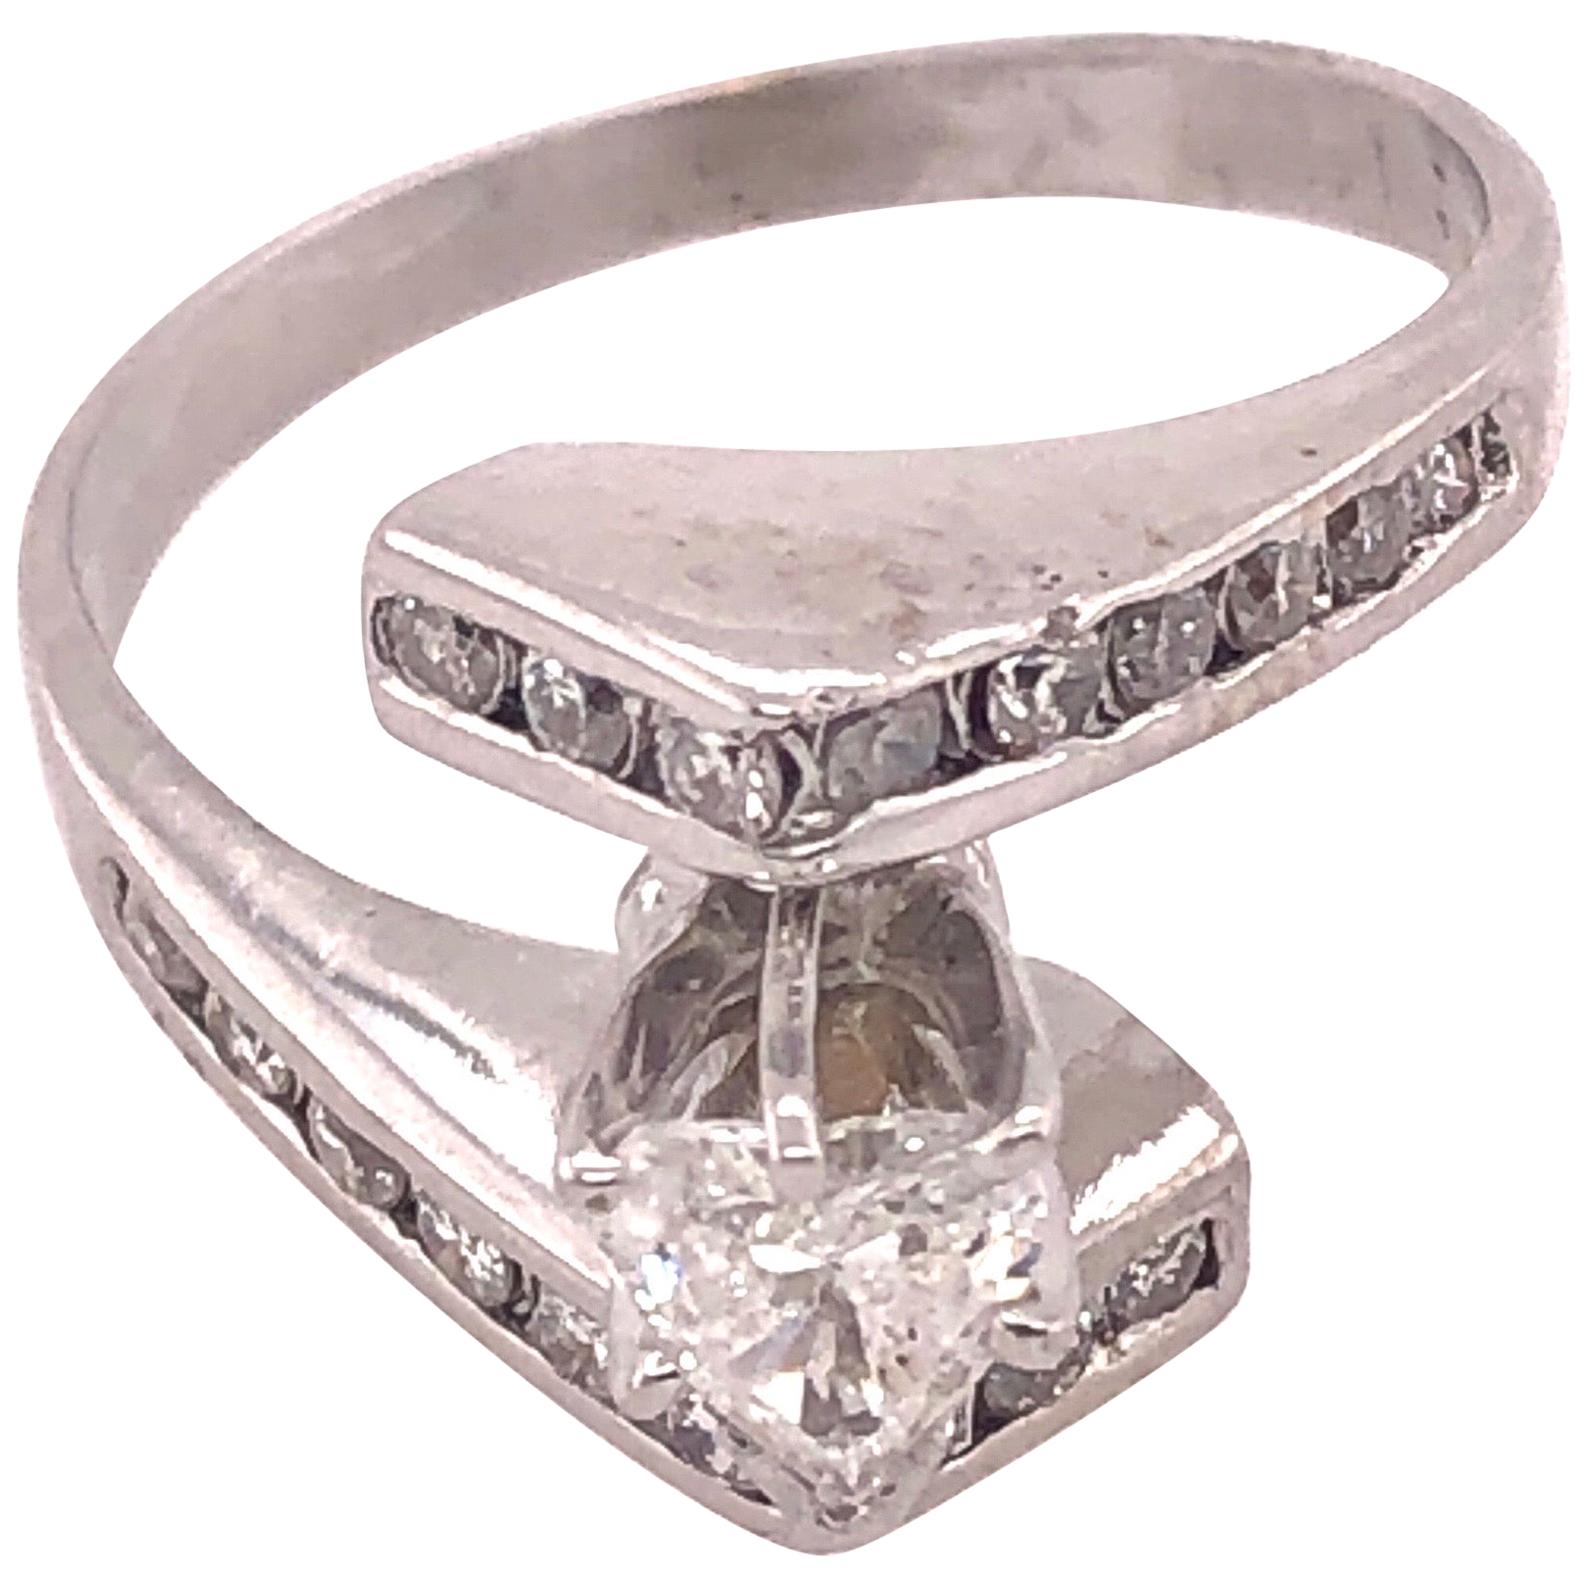 14 Karat White Gold Engagement Ring / Bridal Ring 1 Carat Total Diamond Weight